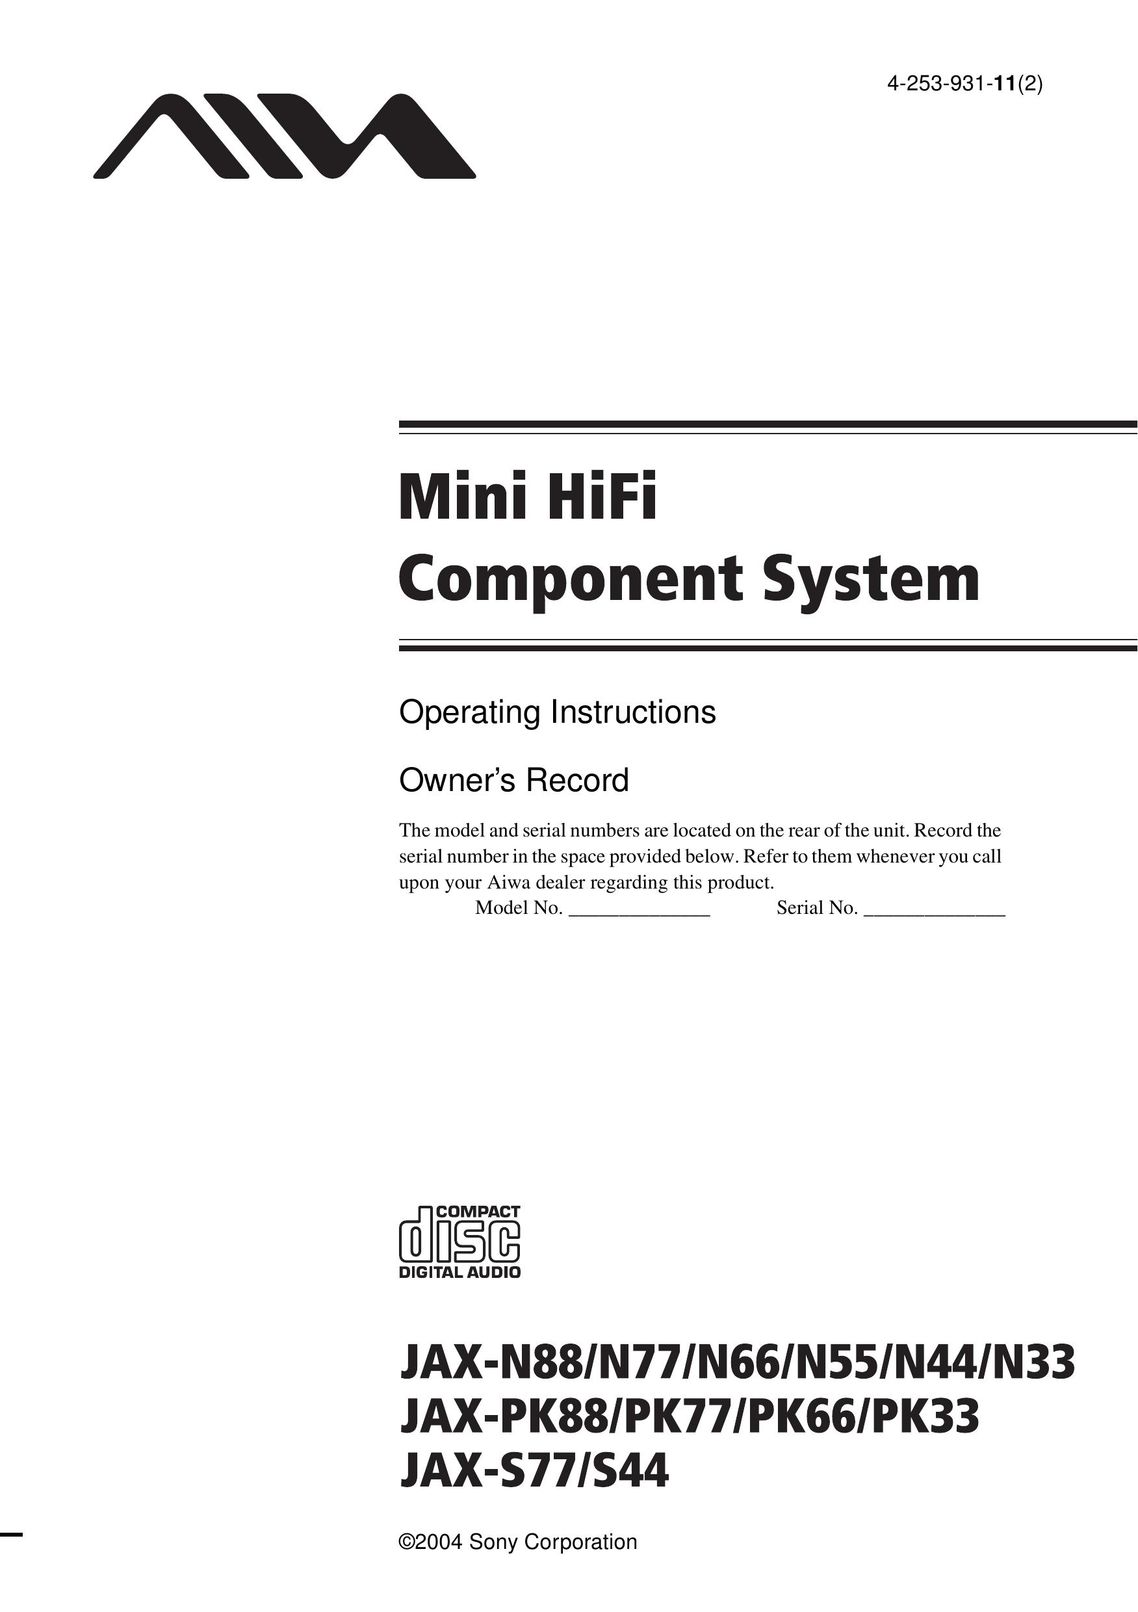 Aiwa JAX-N44 Stereo System User Manual